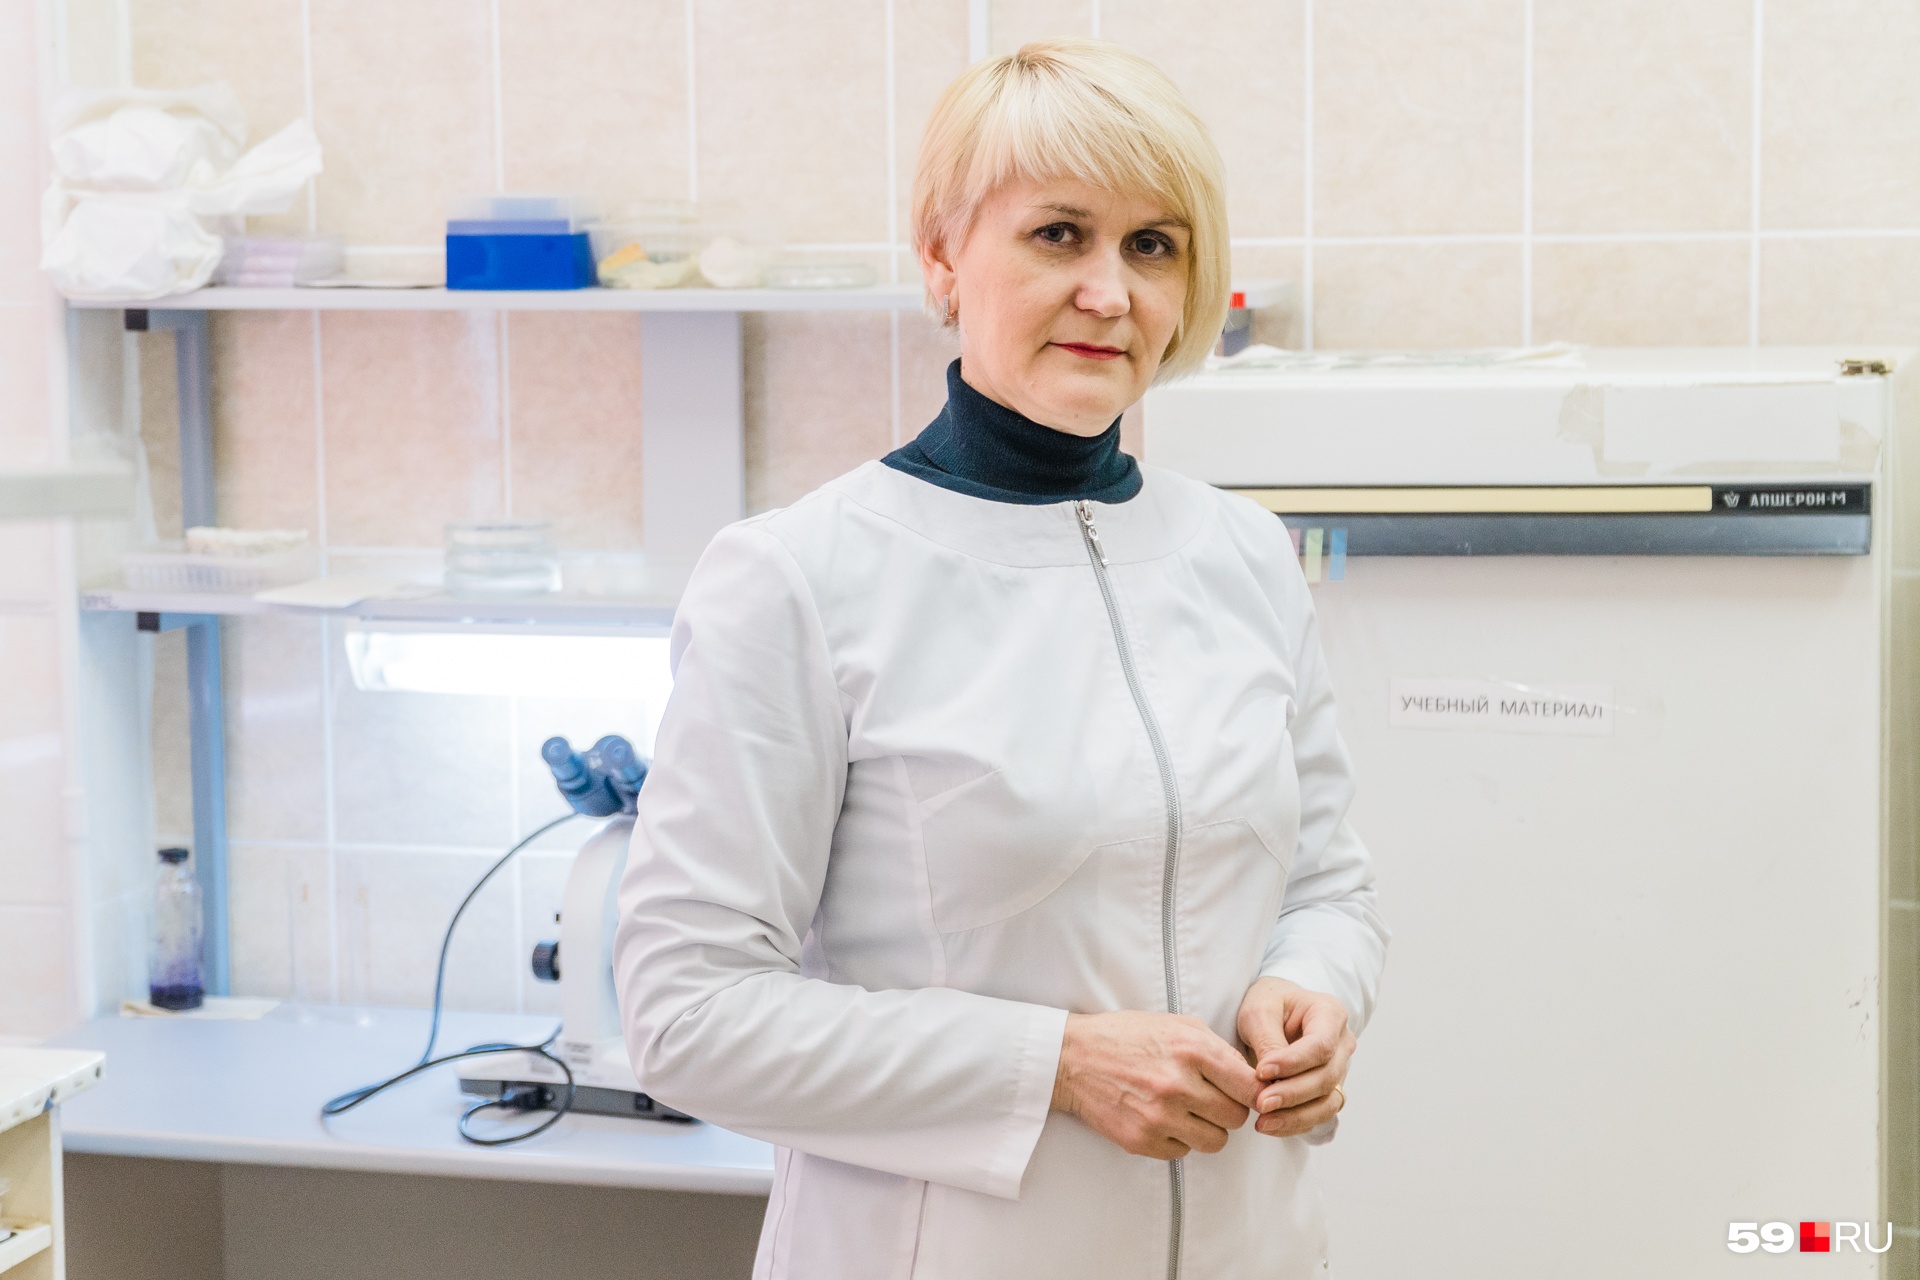 Светлана Поспелова — автор более 50 работ о вирусах